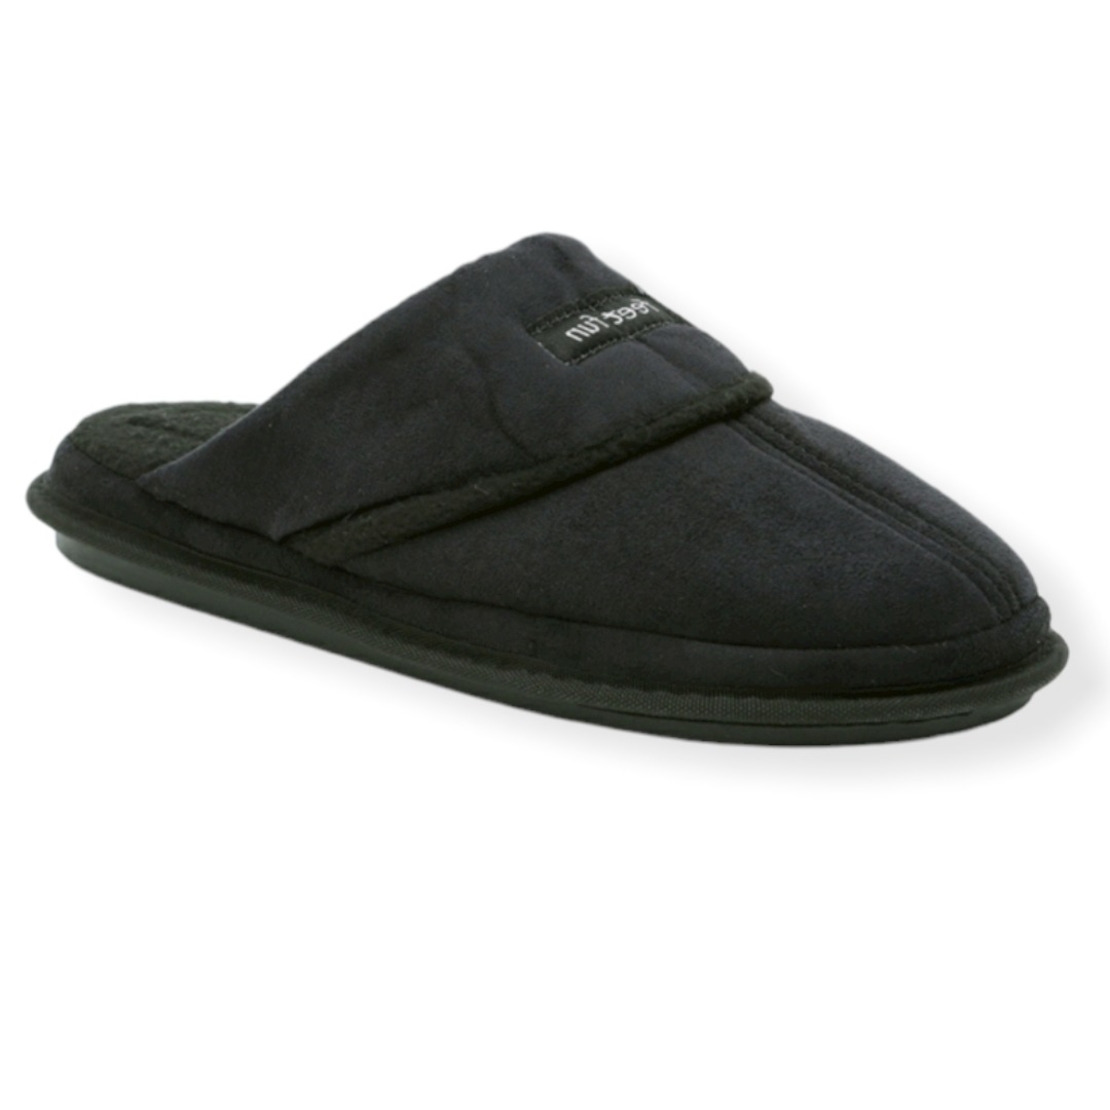 נעלי בית פיט פאן לגבר- מני פליז שחור אפור